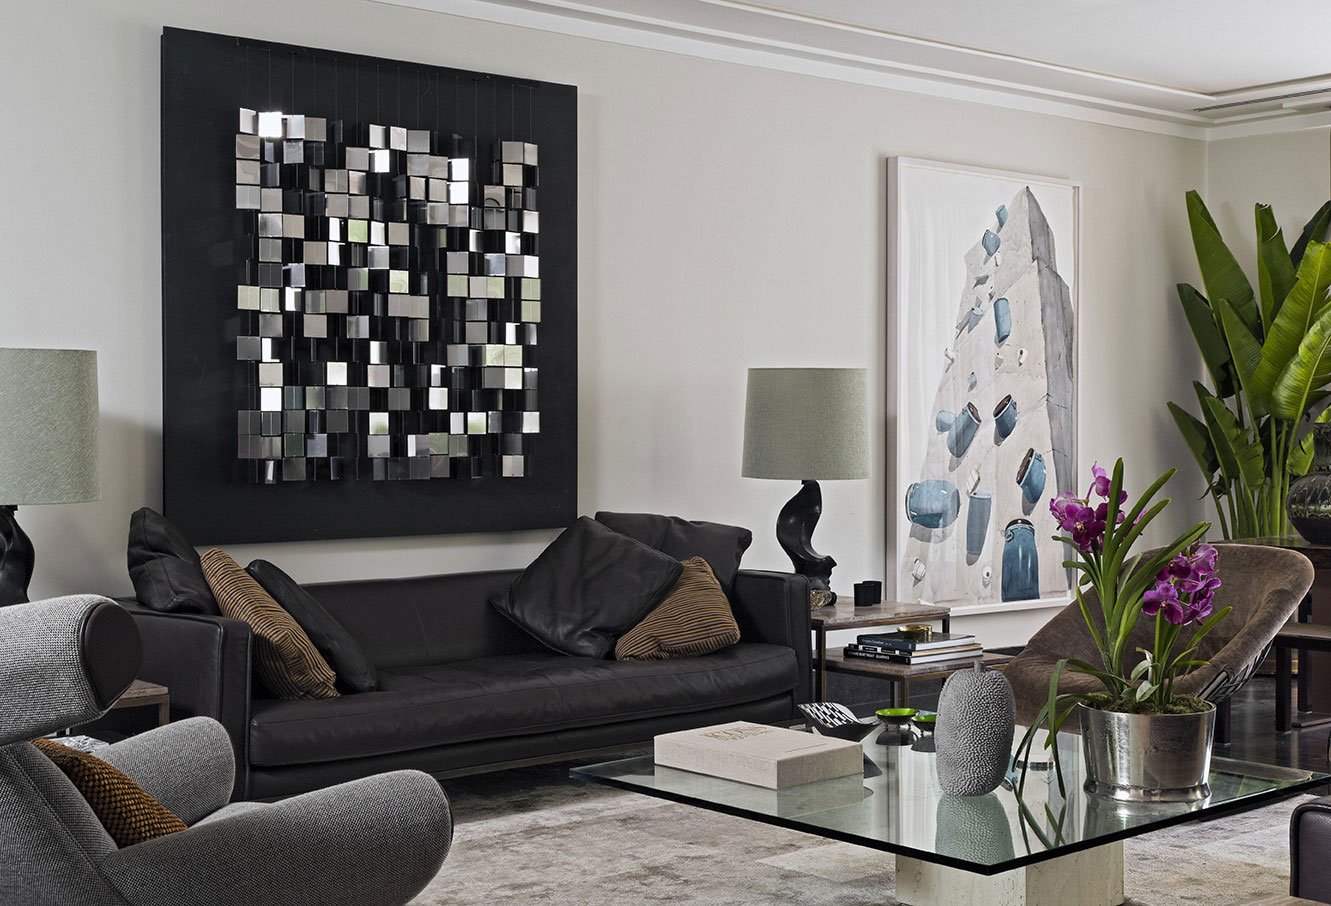 Чем украсить стену в гостиной над диваном, если хочется сохранить минимализм?